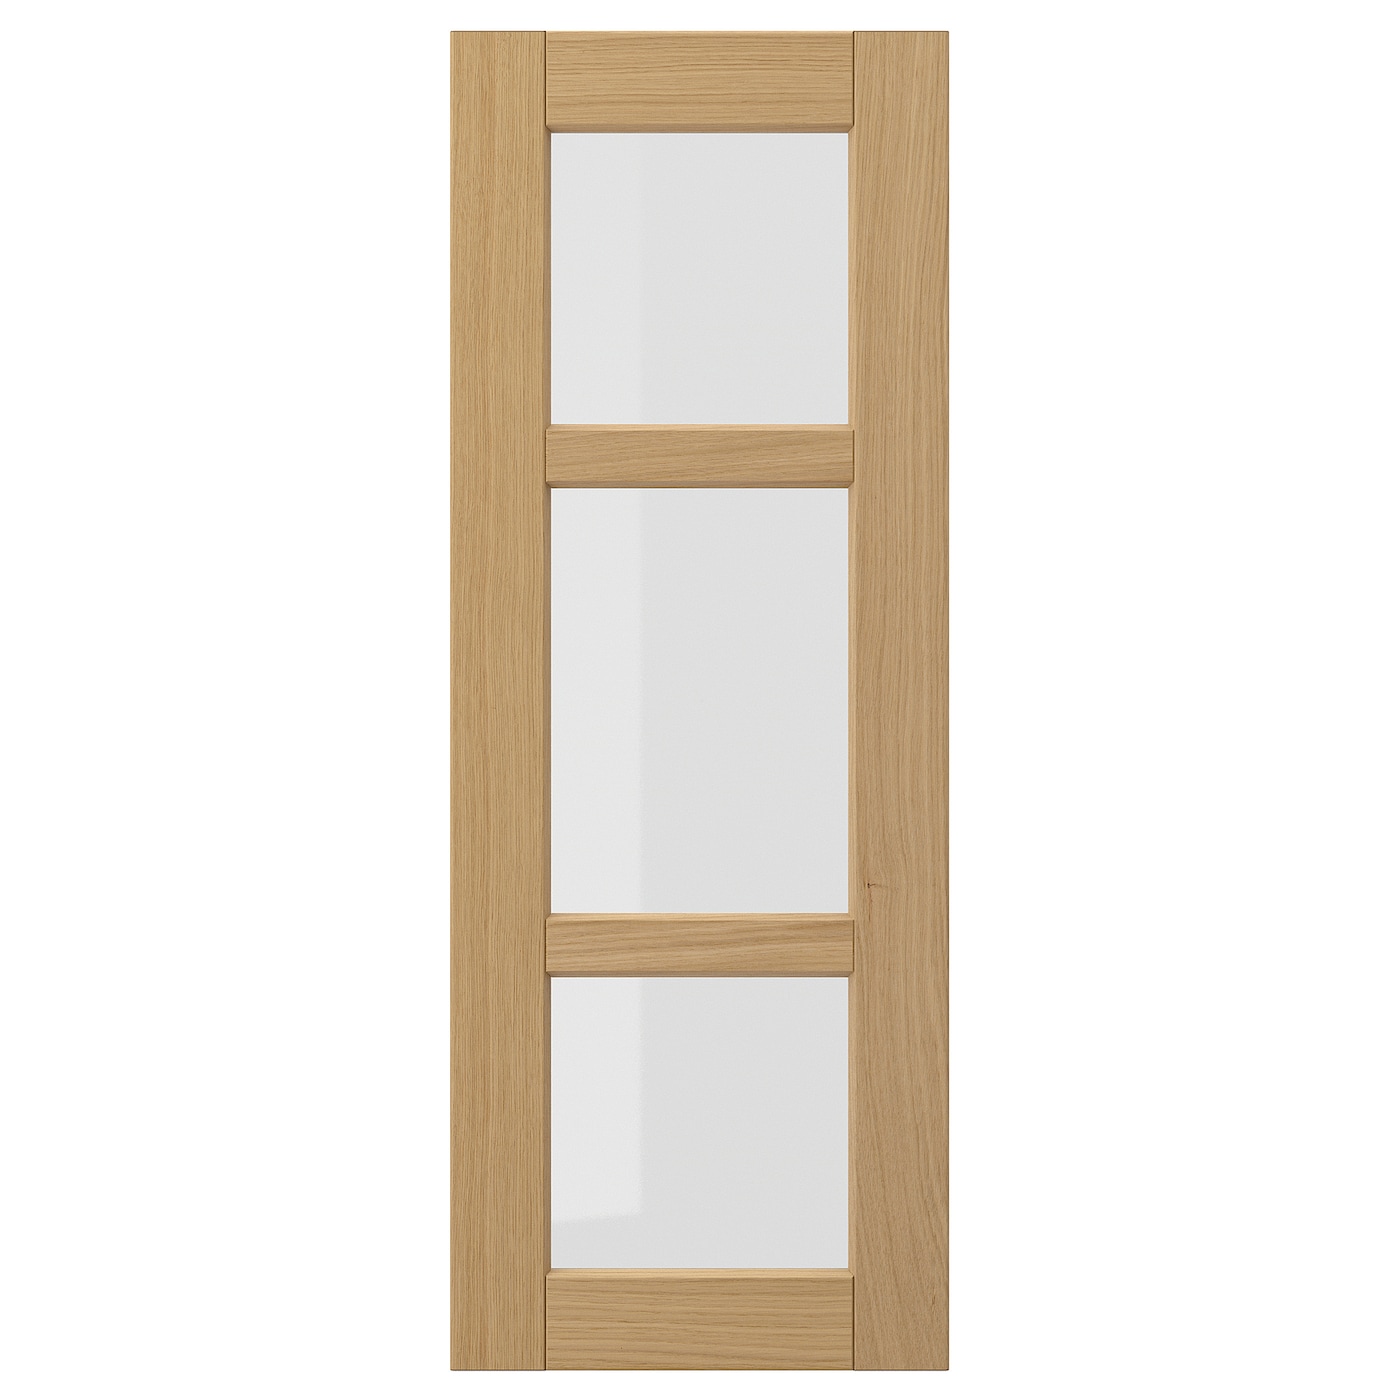 Стеклянная дверь - IKEA FORSBACKA/ФОРСБАКА ИКЕА, 80х30 см, светло-коричневый